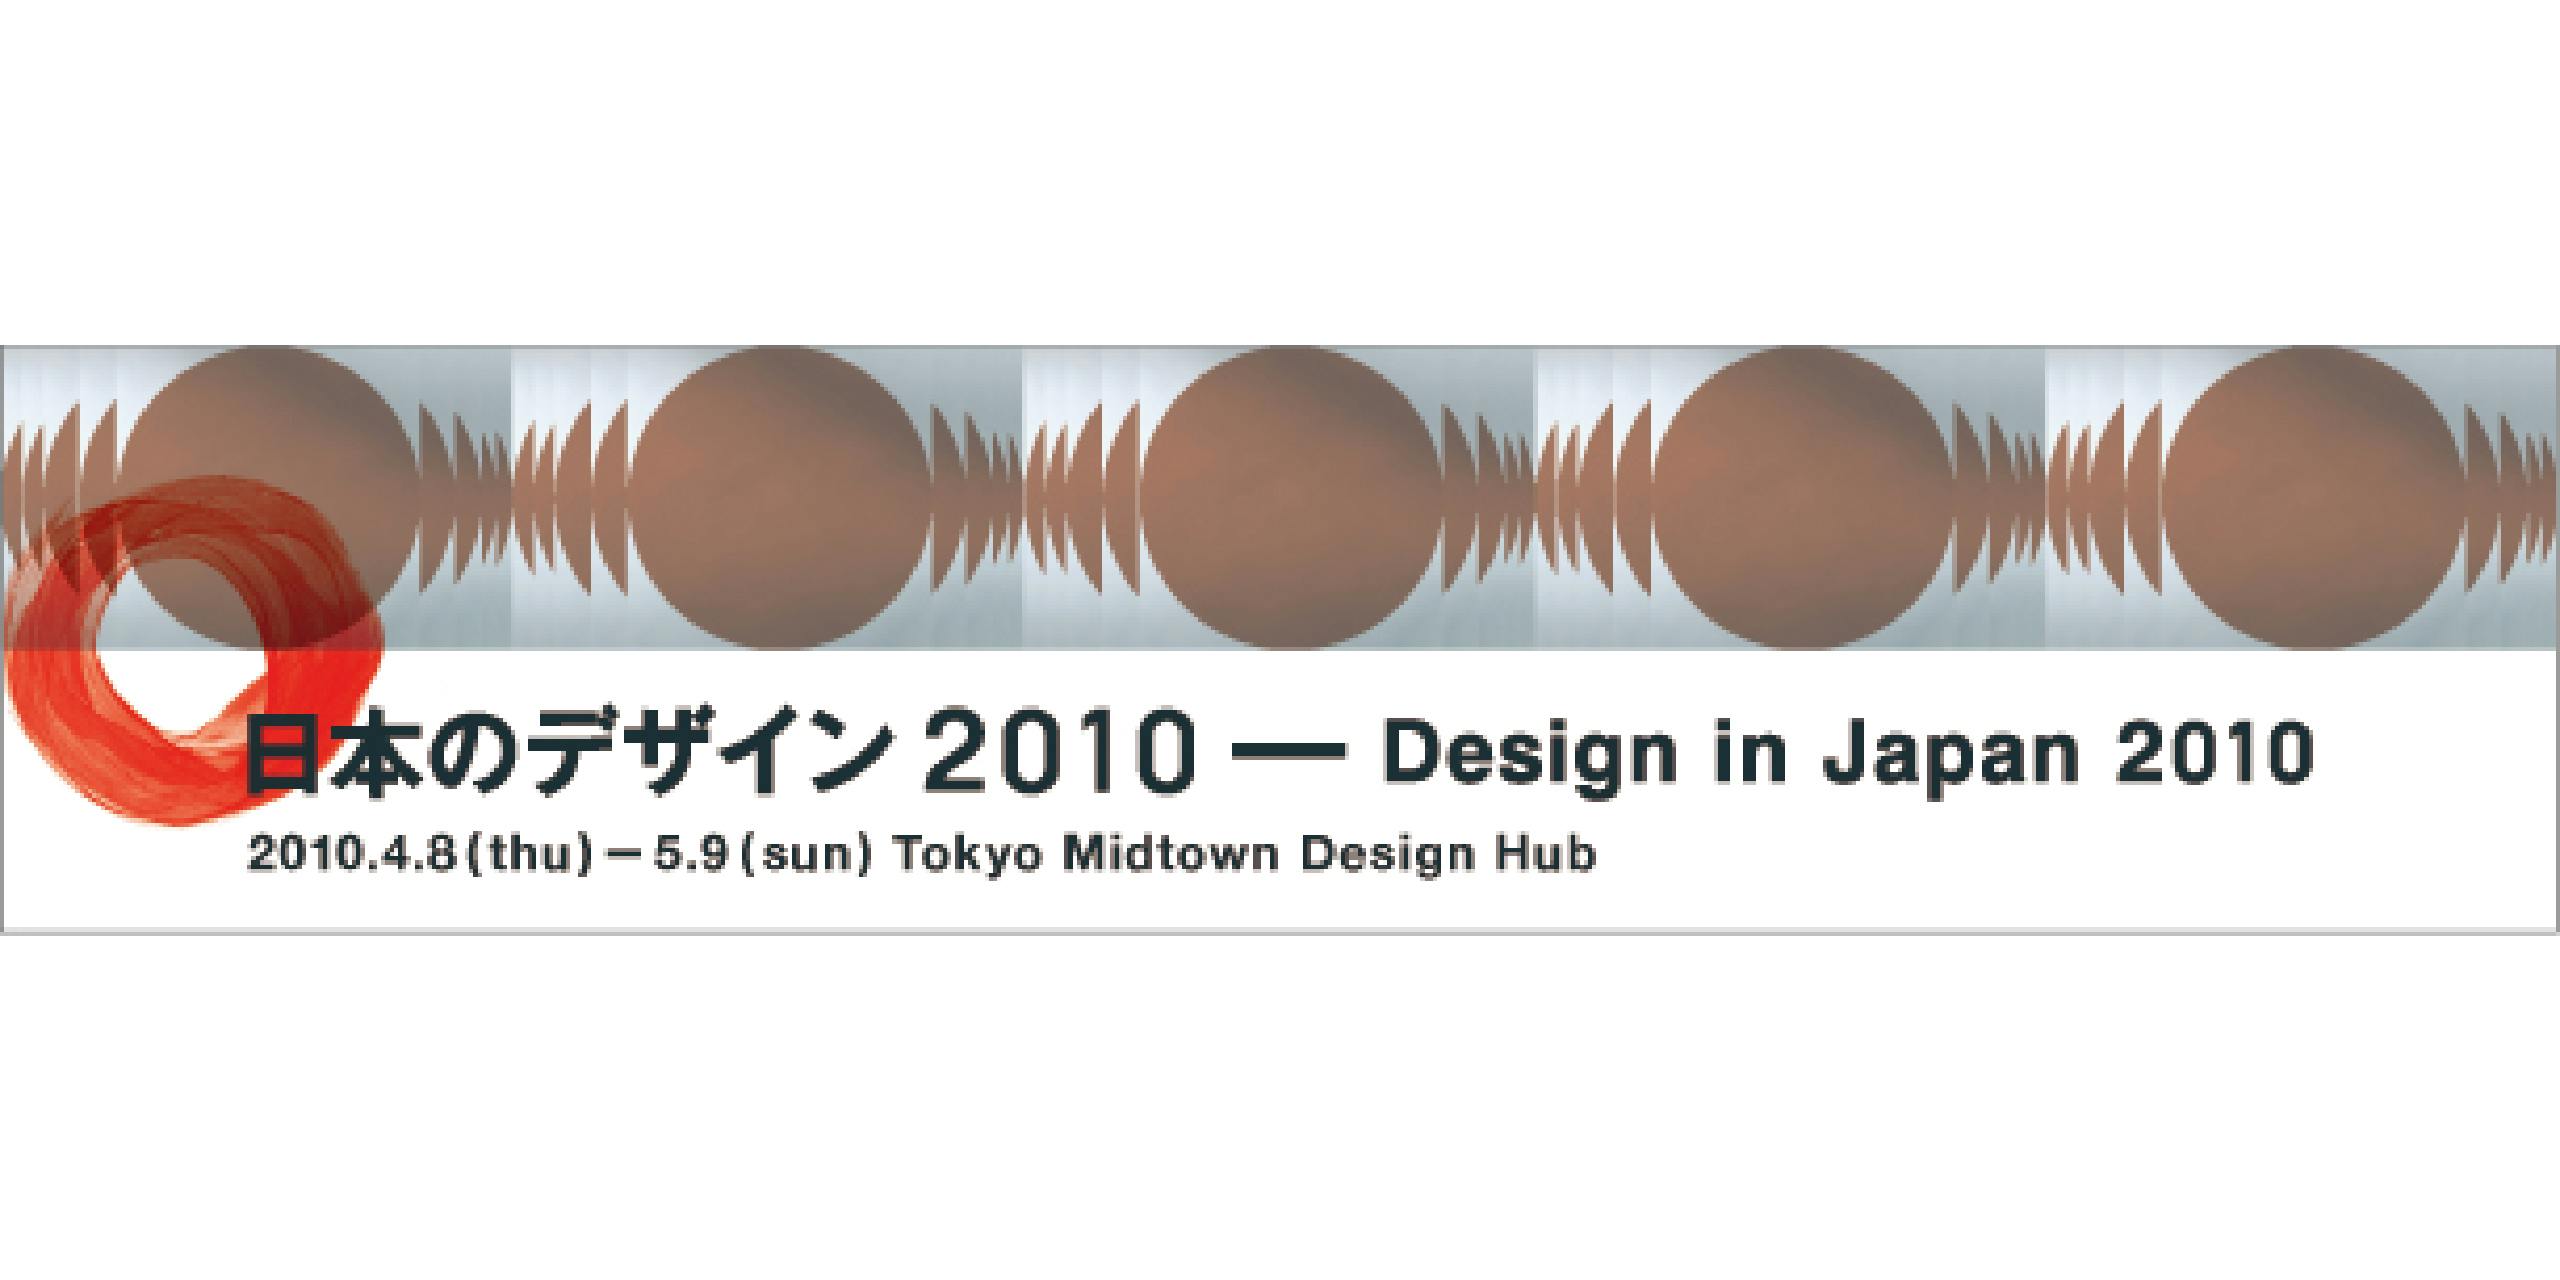 Design in Japan 2010